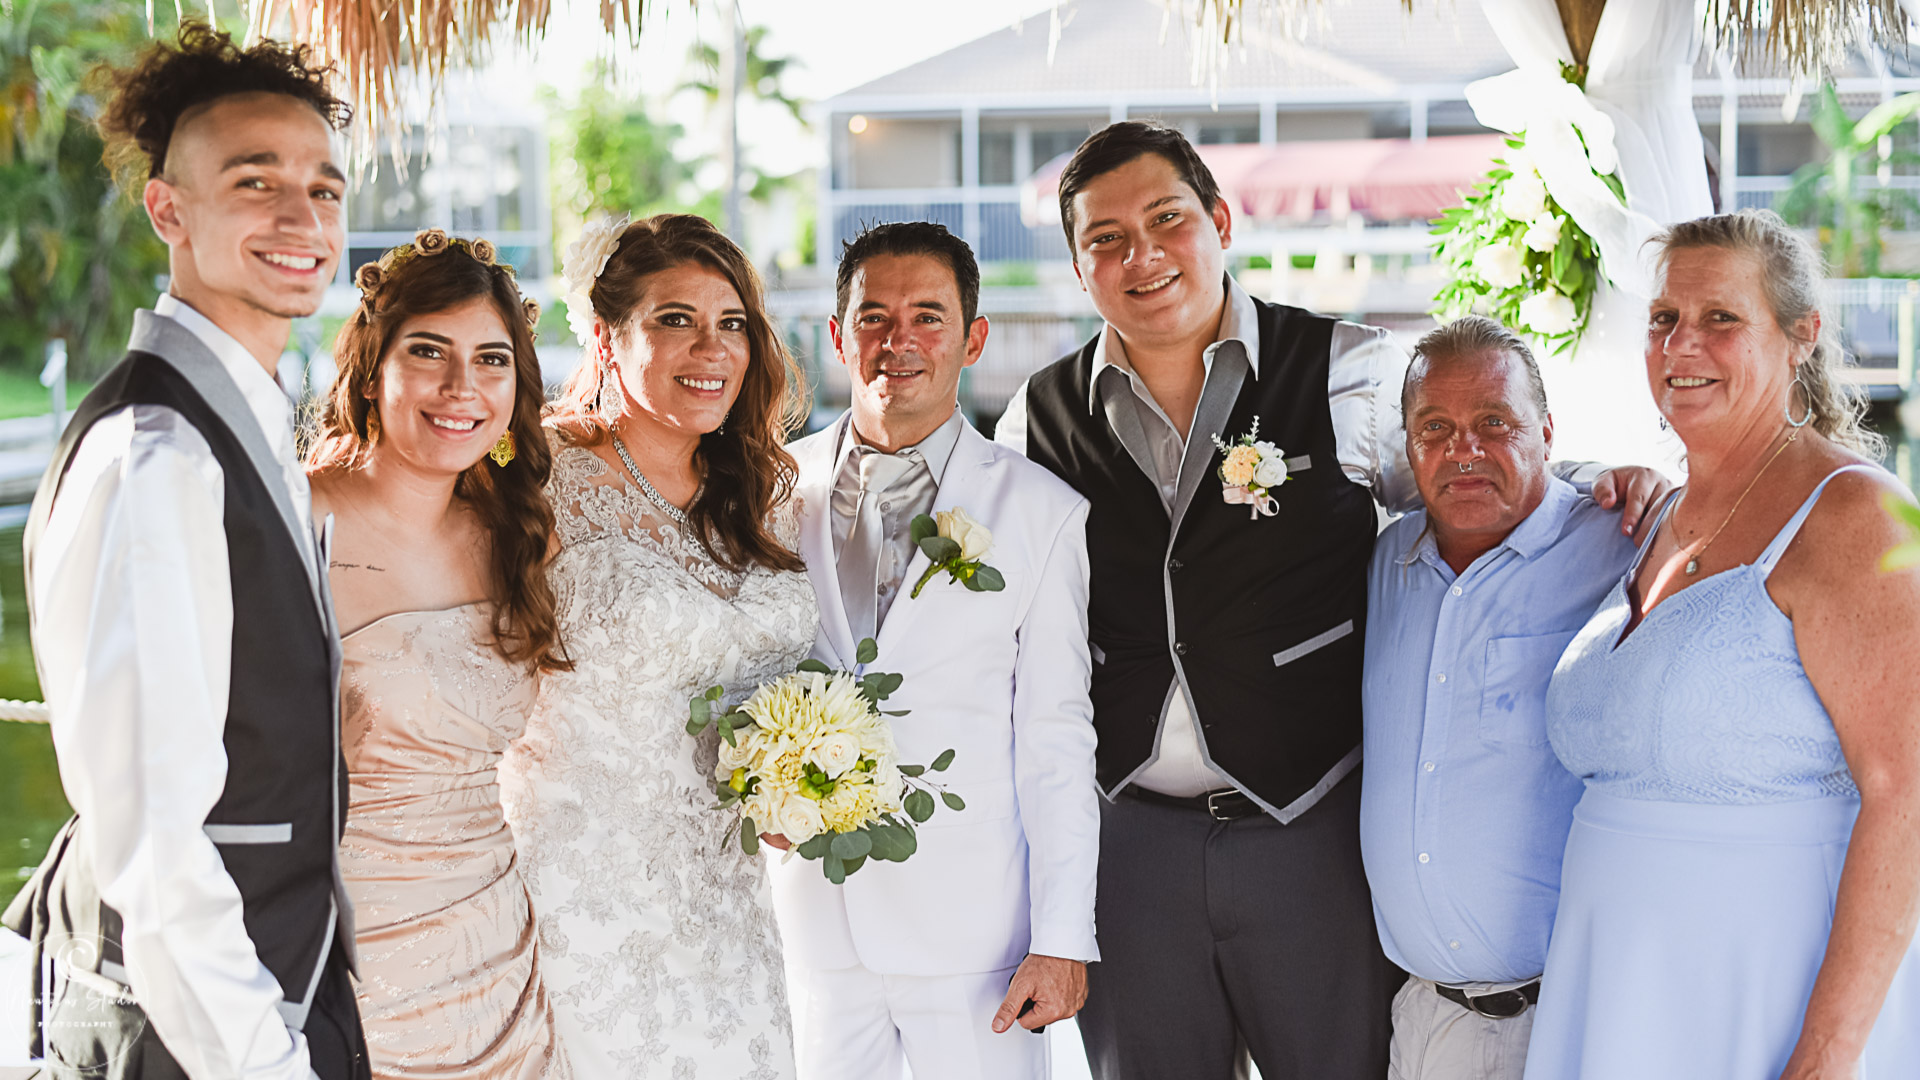  Foto de grupo de bodas durante COVID 19 en Florida